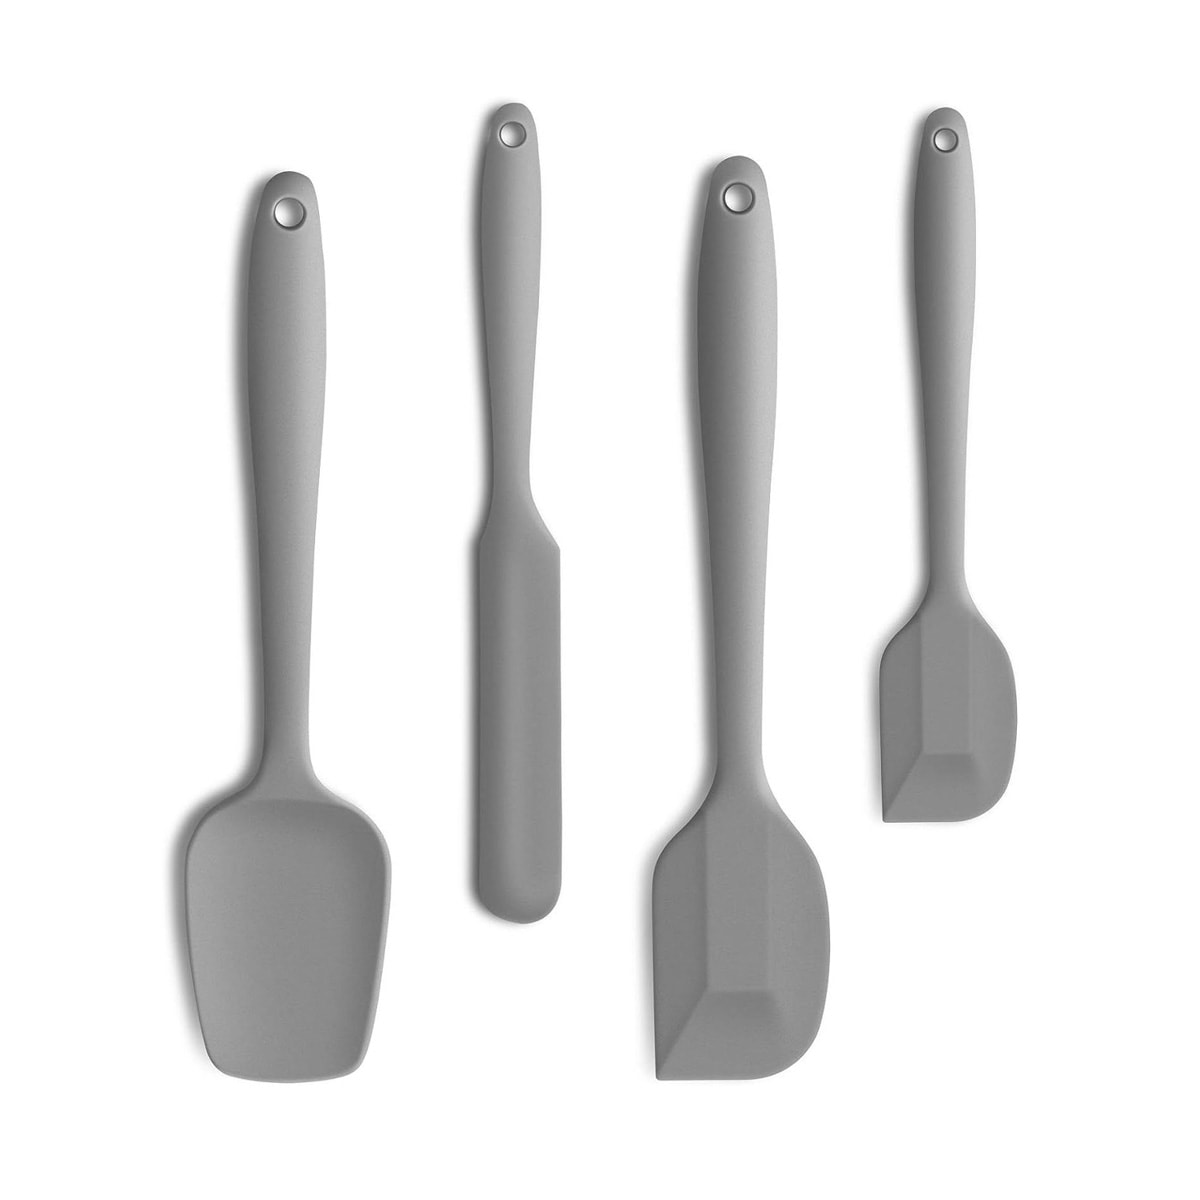 A set of 4 silicone spatulas.